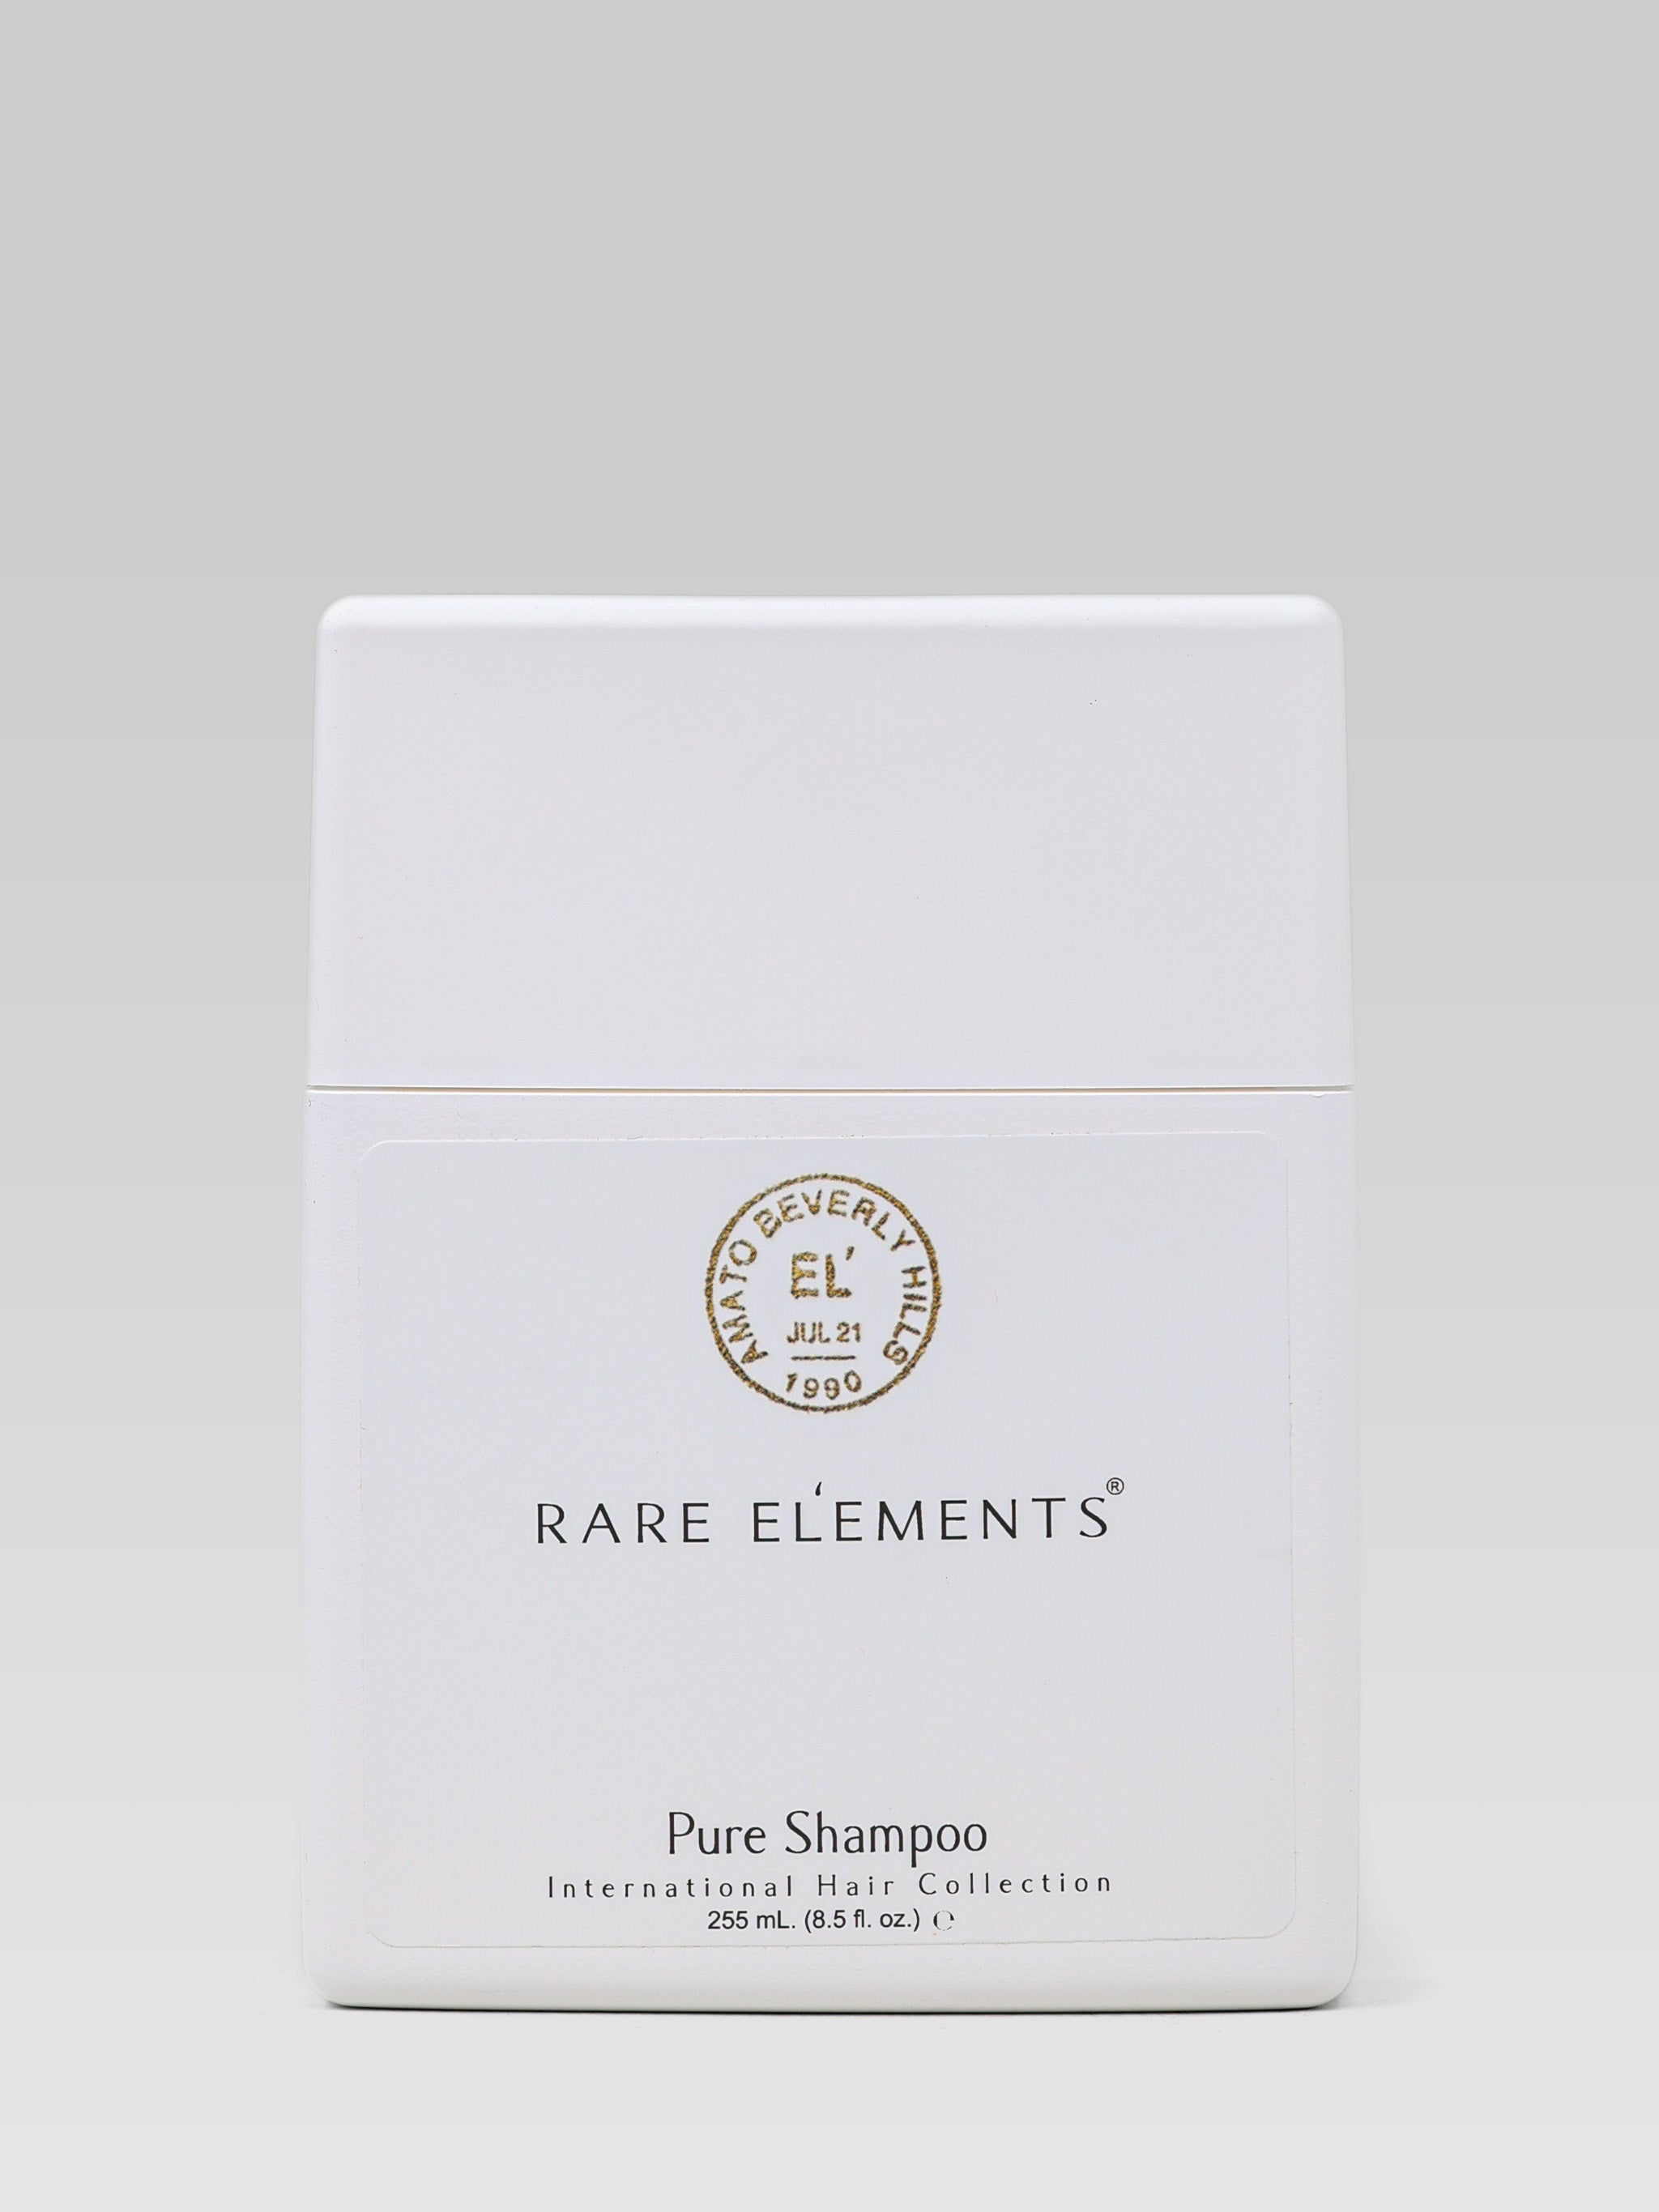 RARE EL’EMENTS Pure Shampoo product shot